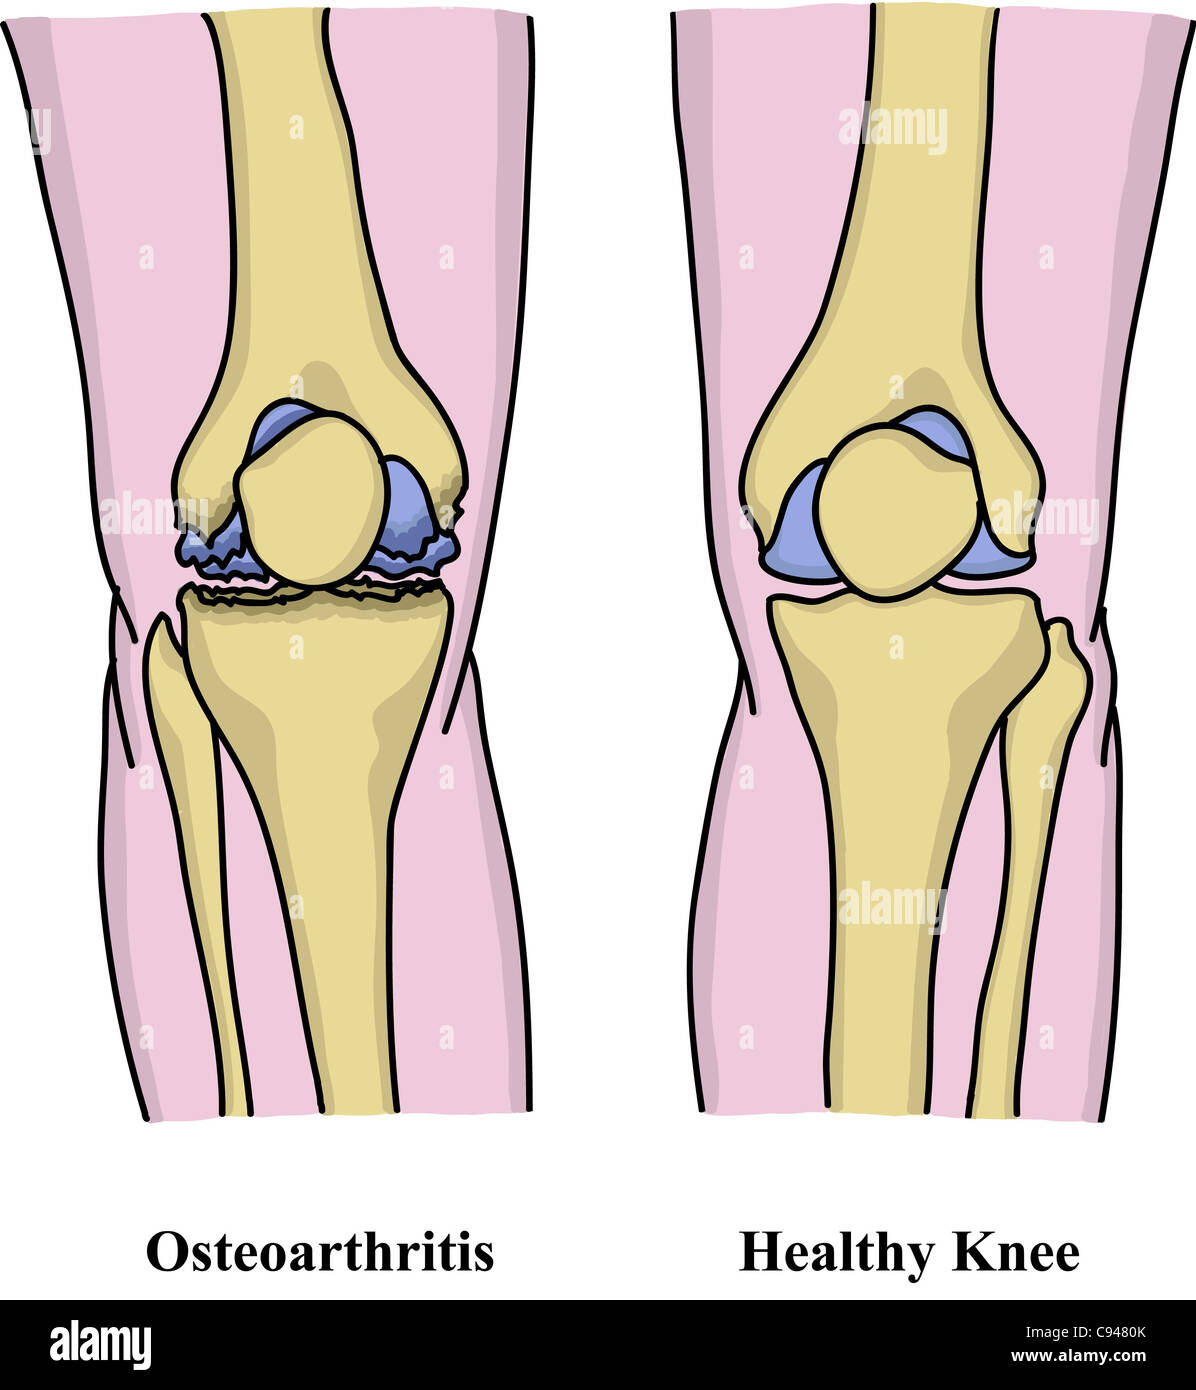 Osteoarthritis illustration Stock Photo